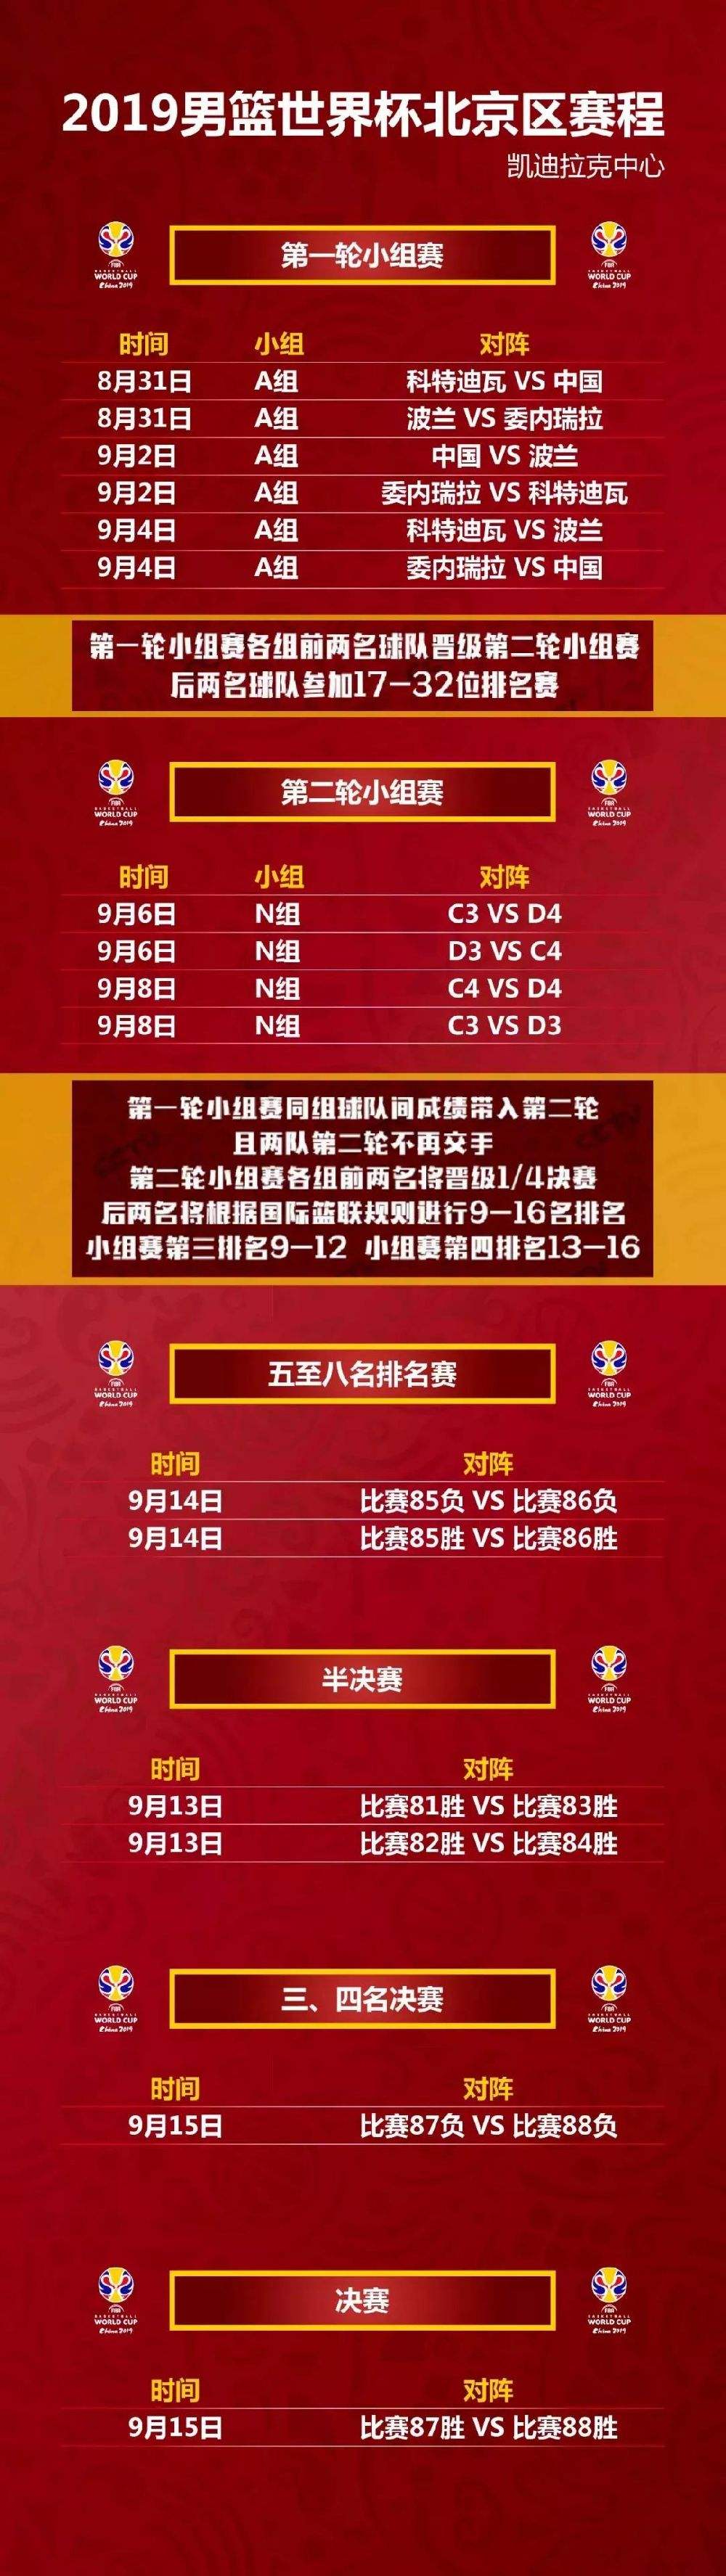 足球世界杯2019賽程「中國足球比賽賽程2019世界杯」